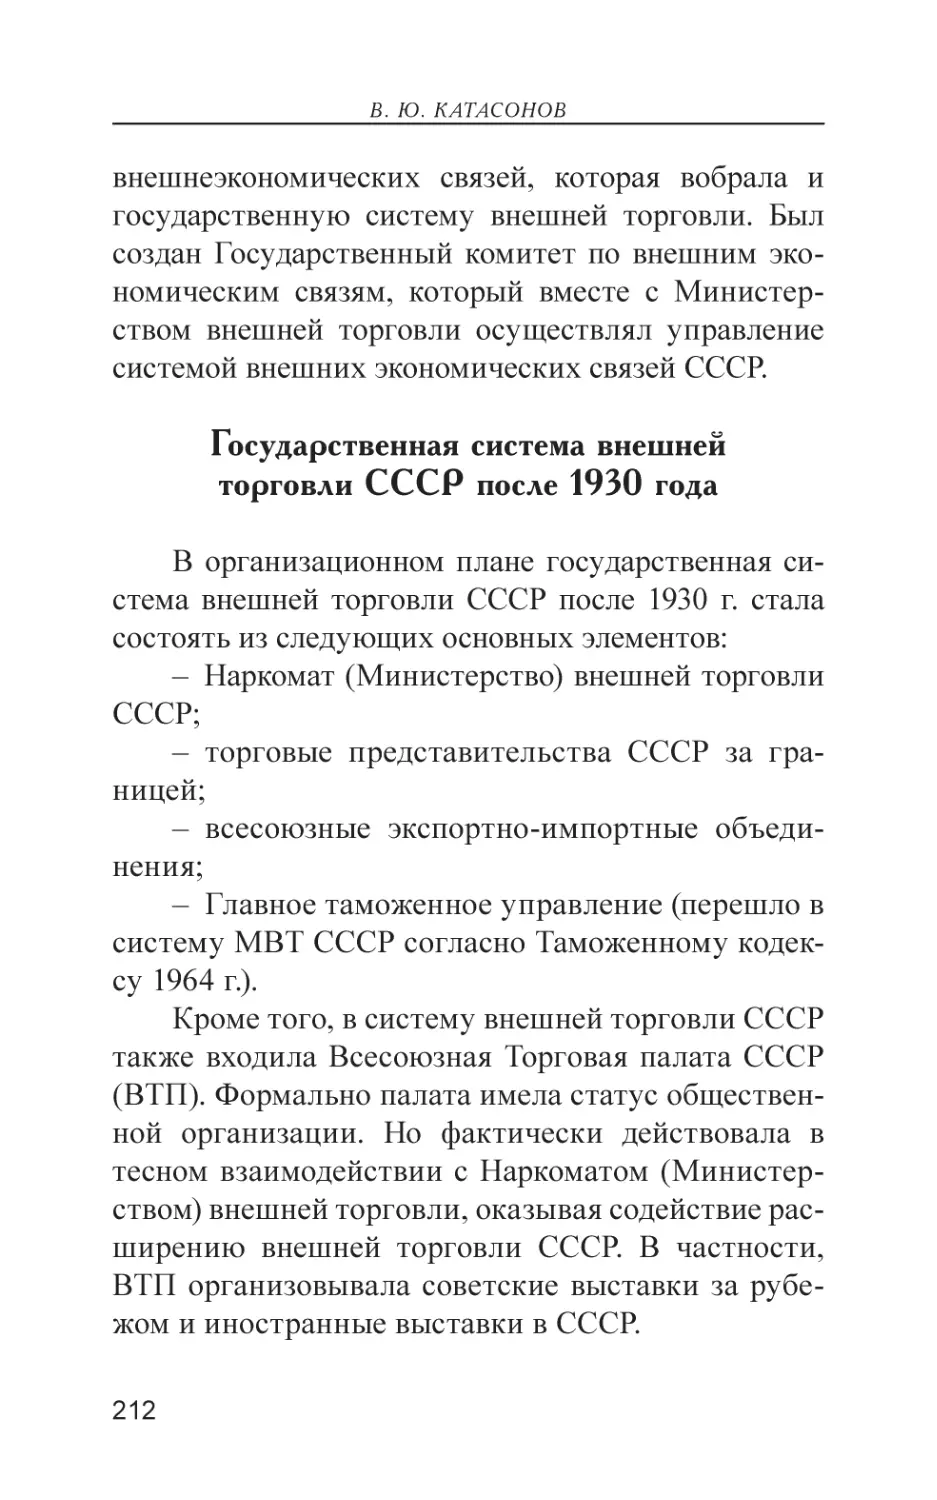 Государственная система внешней торговли СССР после 1930 года